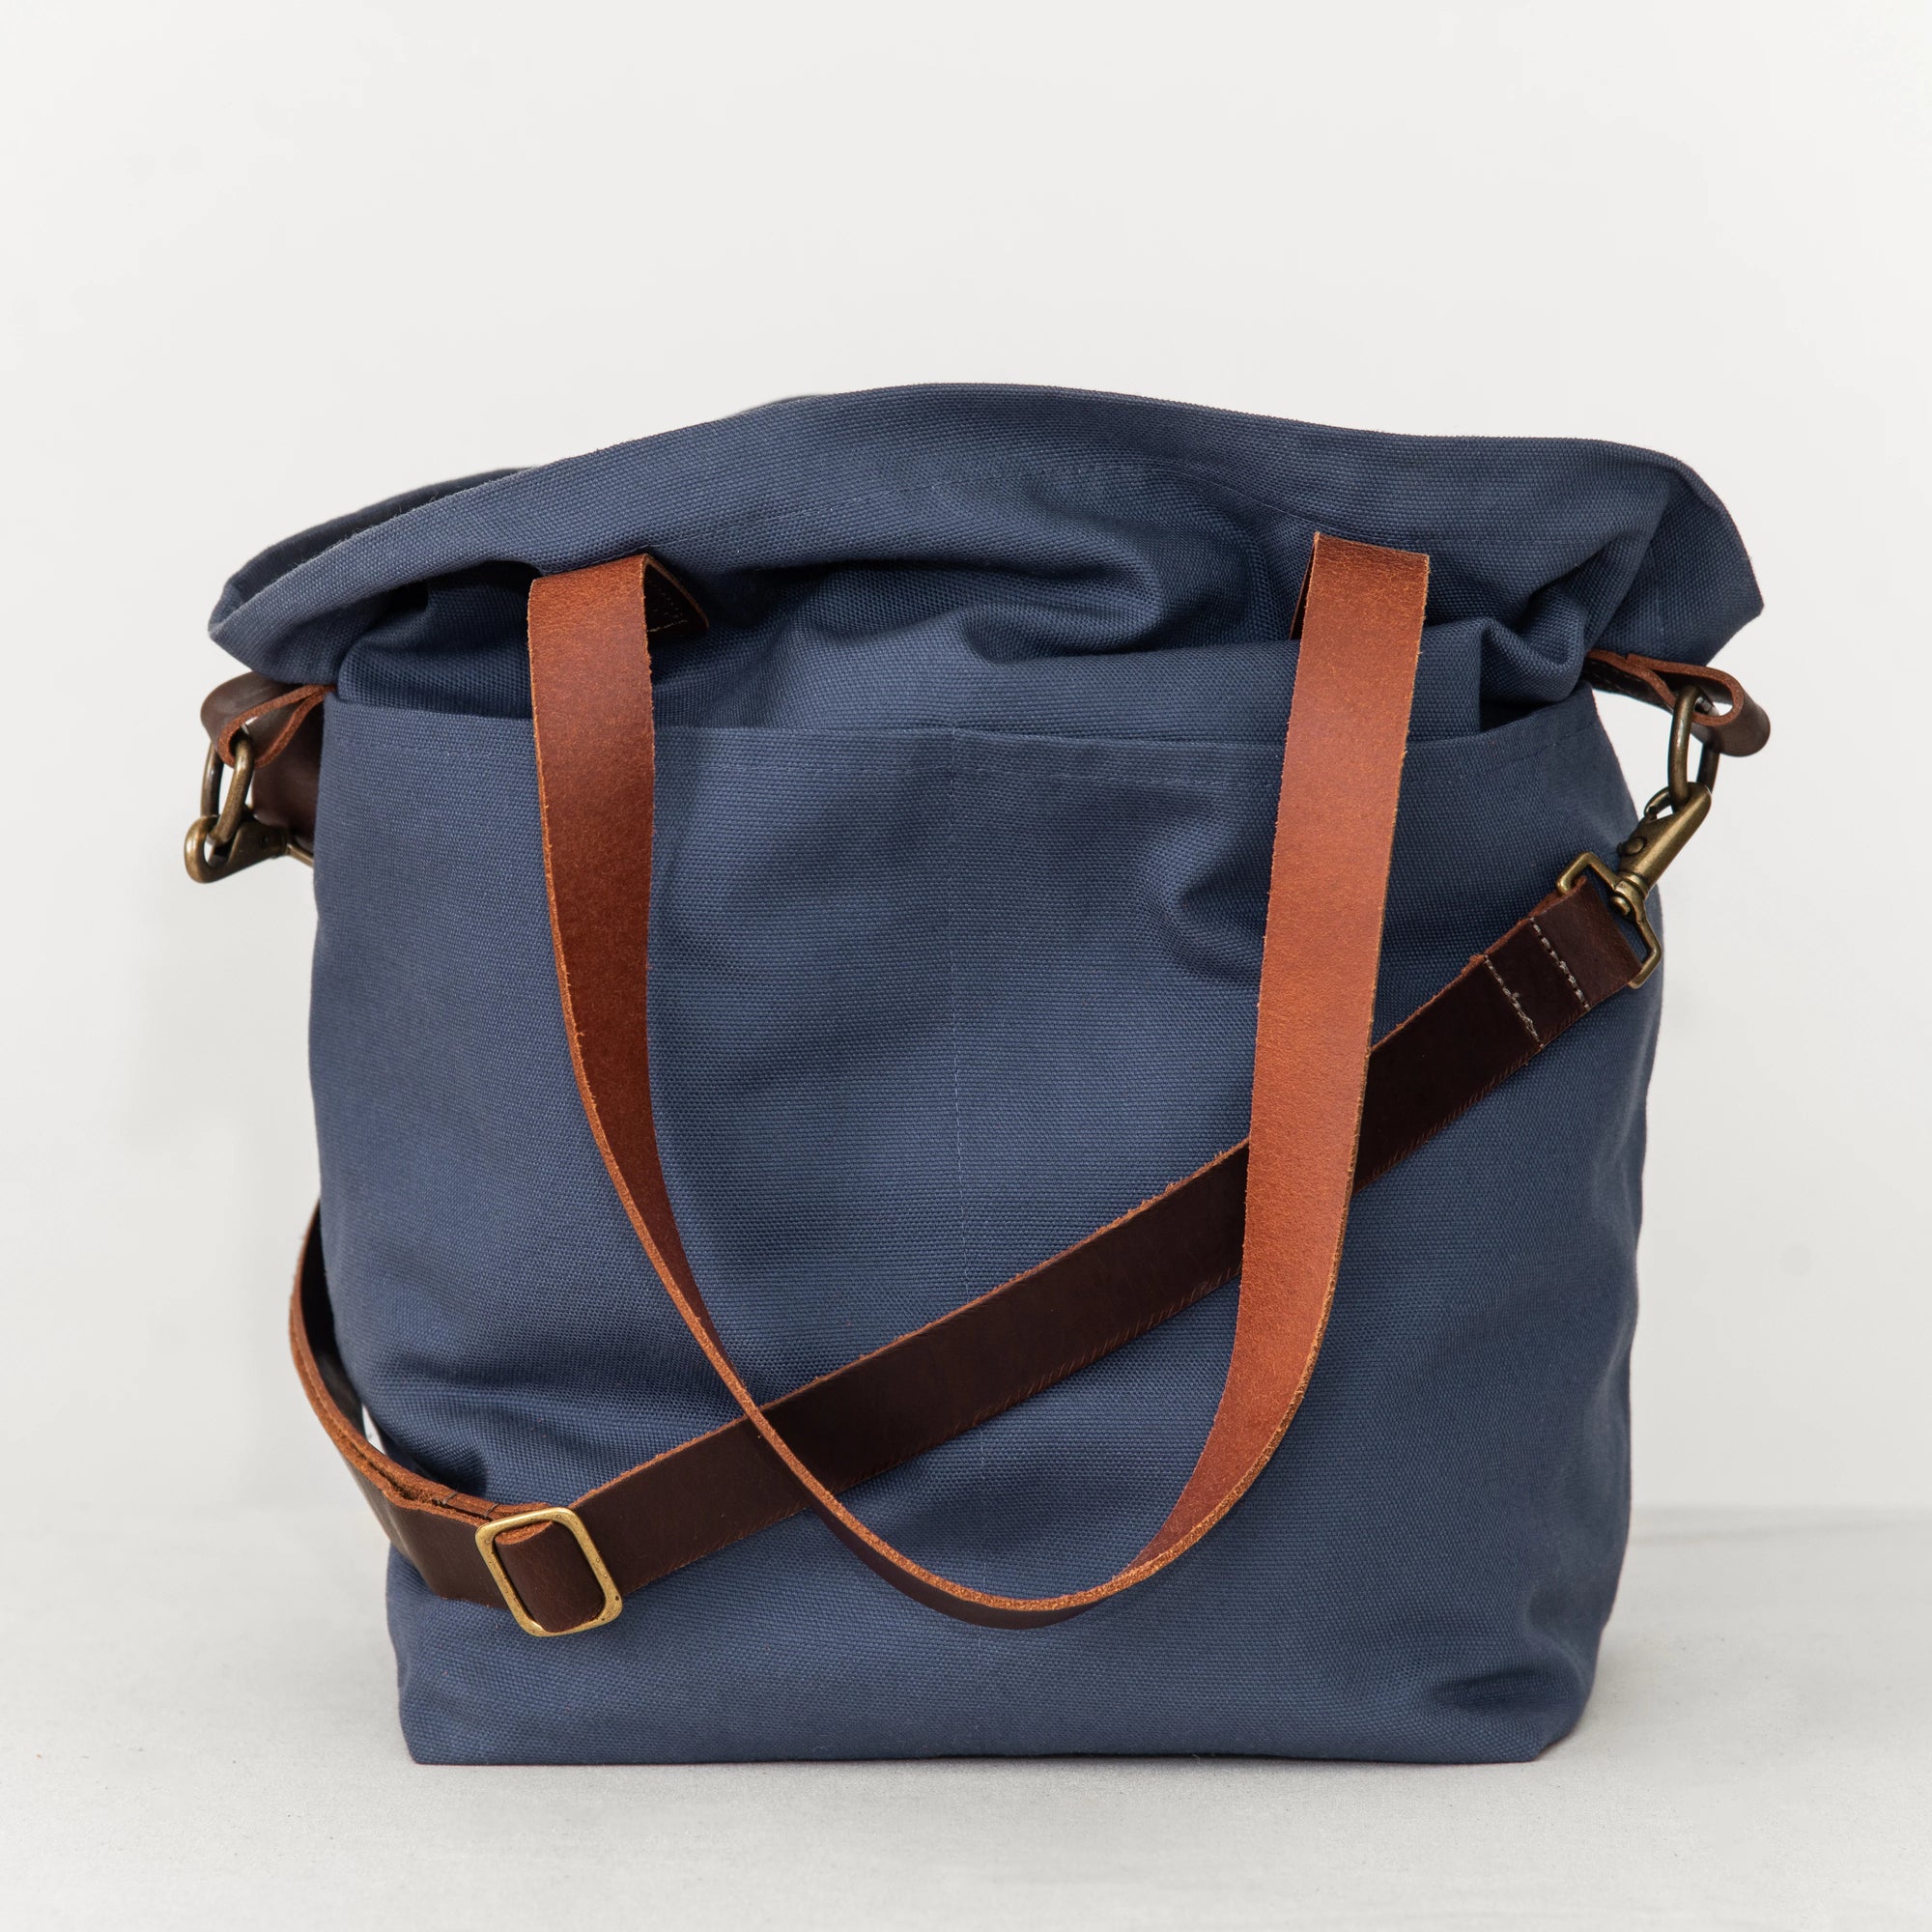 Twig & Horn Bucket Bag